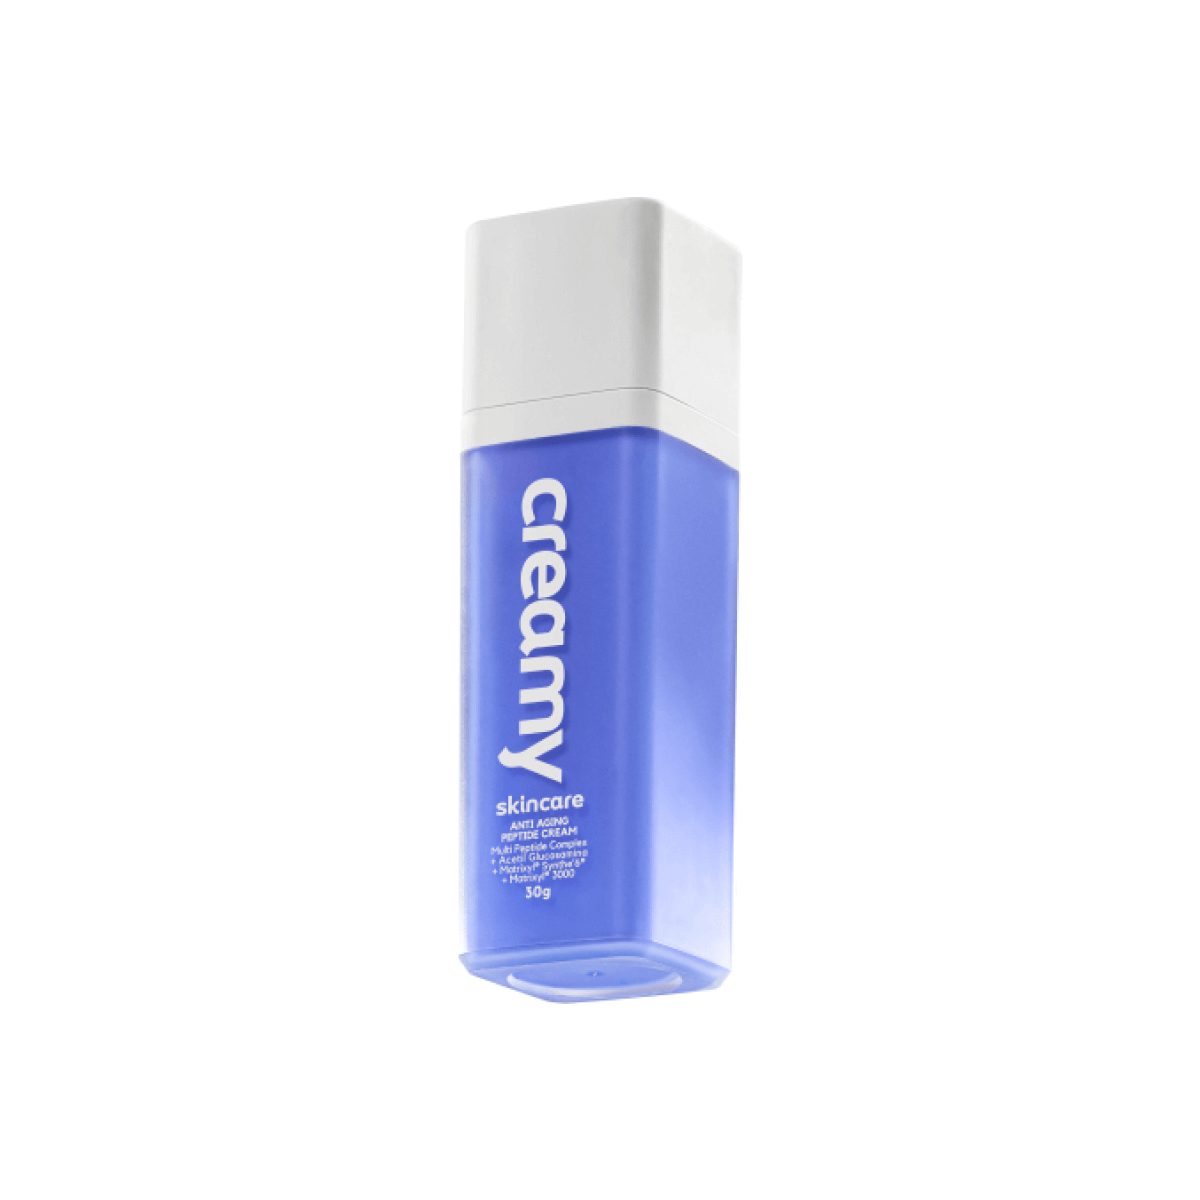 Kit Creamy Skincare Anti-Aging Peptide Cream - Hidratante Antissinais 30g (2 produtos) ÚNICO 2